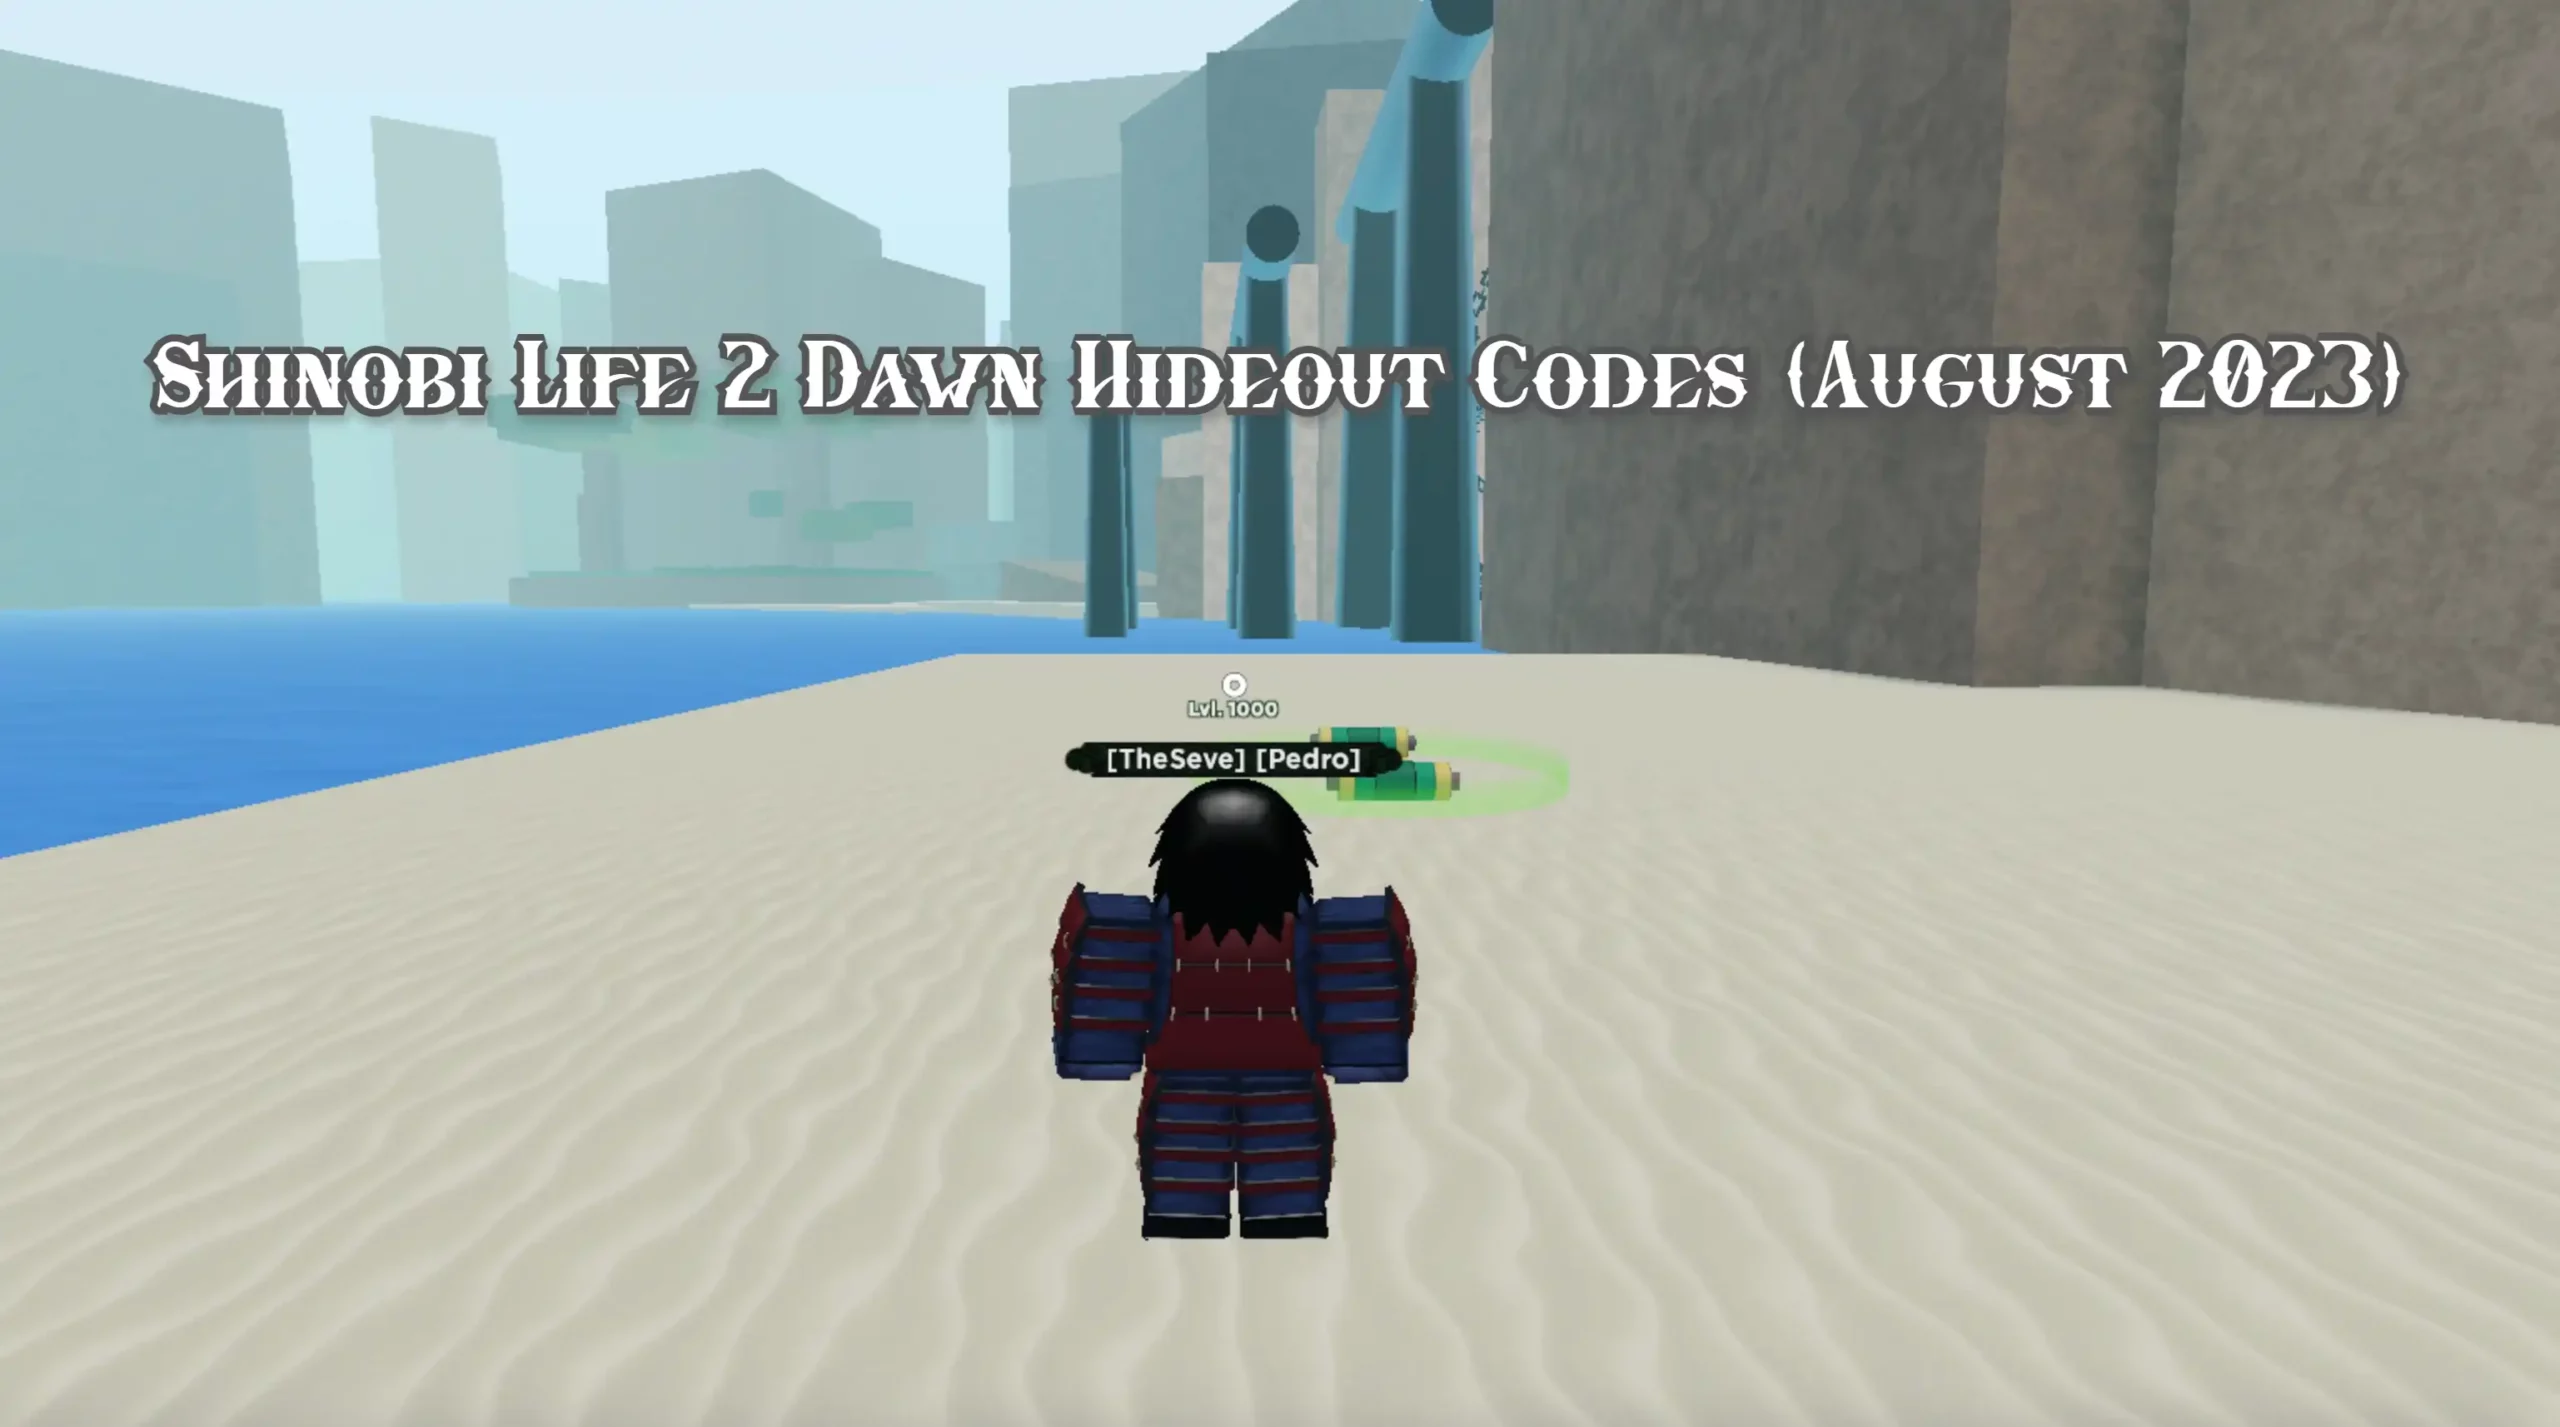 Shinobi Life 2 Dawn Hideout Codes (August 2023) - Get Free Rewards